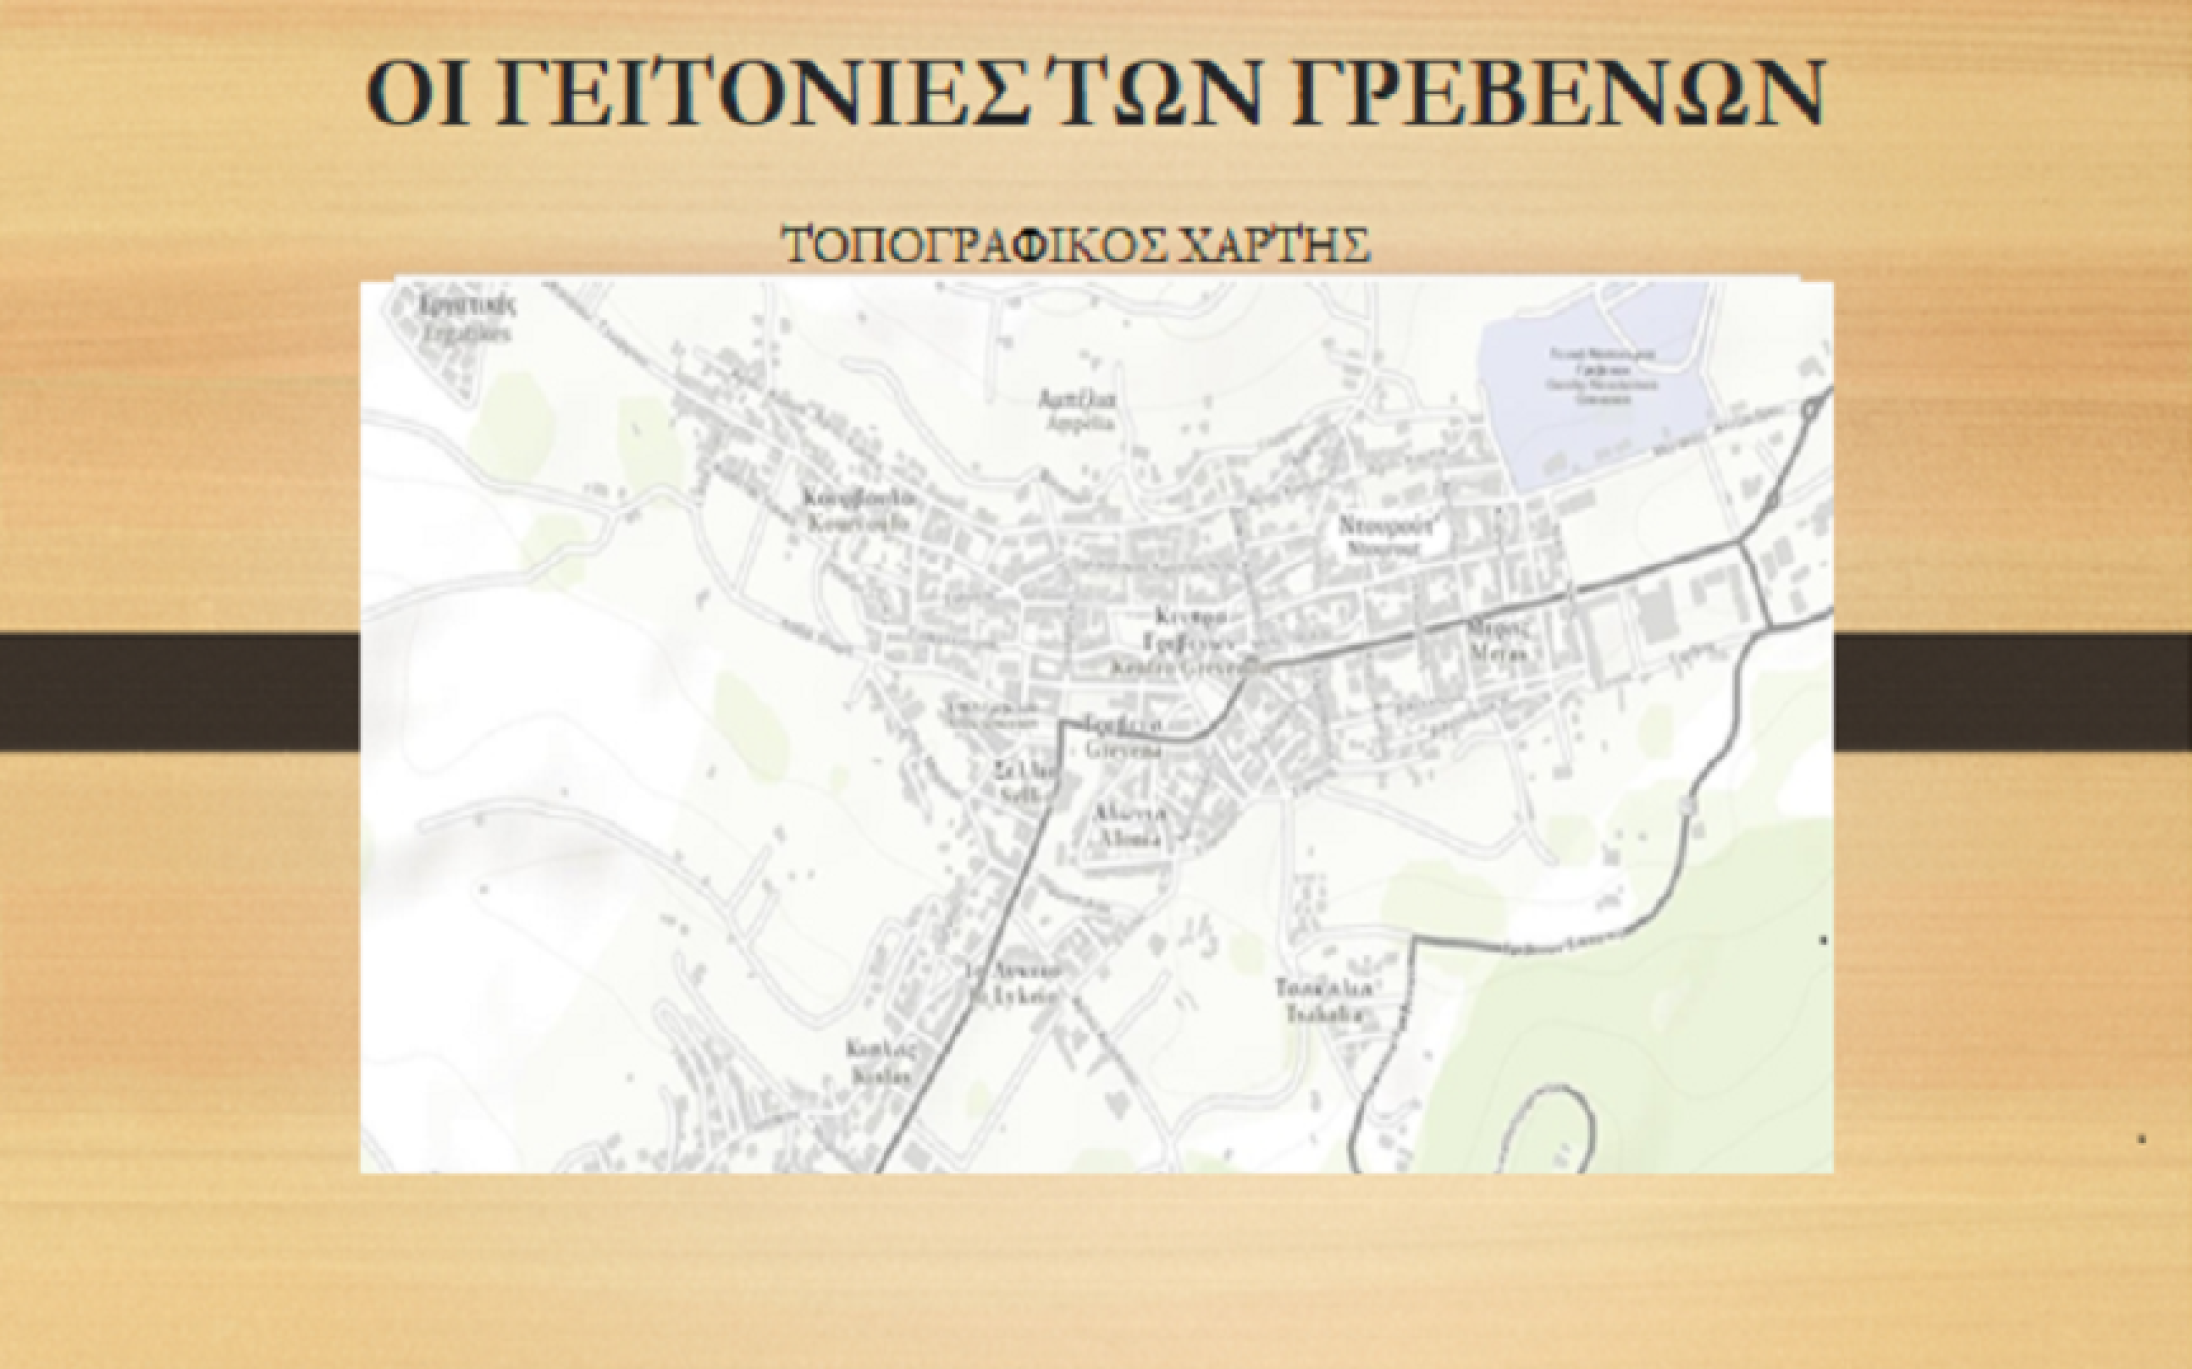 Κάθε γειτονιά των Γρεβενών και μια ιστορία.
Σας τις παρουσιάζουμε έτσι όπως διαμορφώθηκαν από την εποχή της Τουρκοκρατίας.